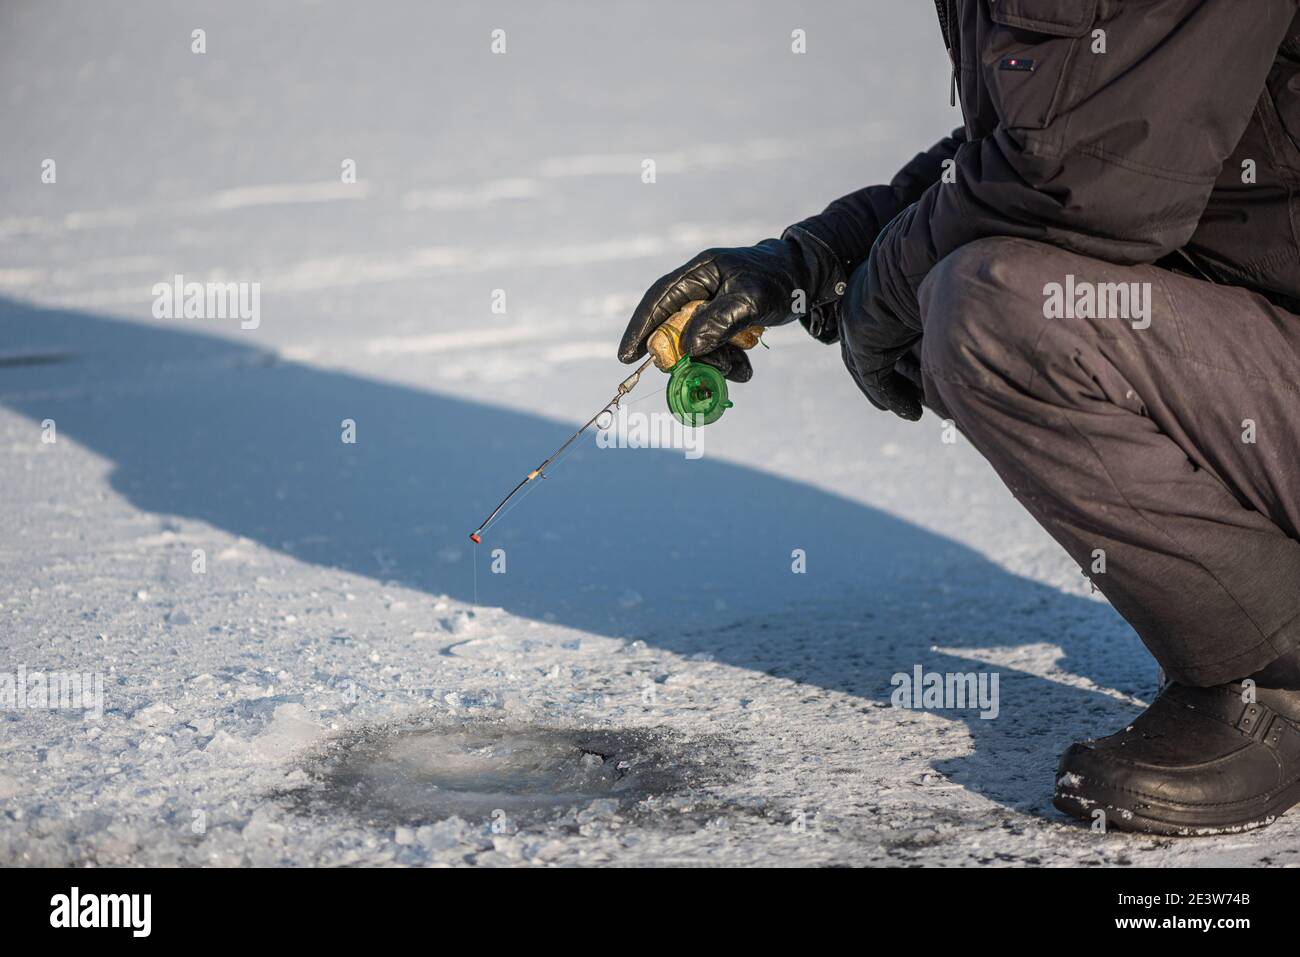 Pesca sul ghiaccio sul lago in giornata soleggiata gelata. Uomo seduto vicino al buco del ghiaccio che cattura il pesce. Attività invernale Foto Stock